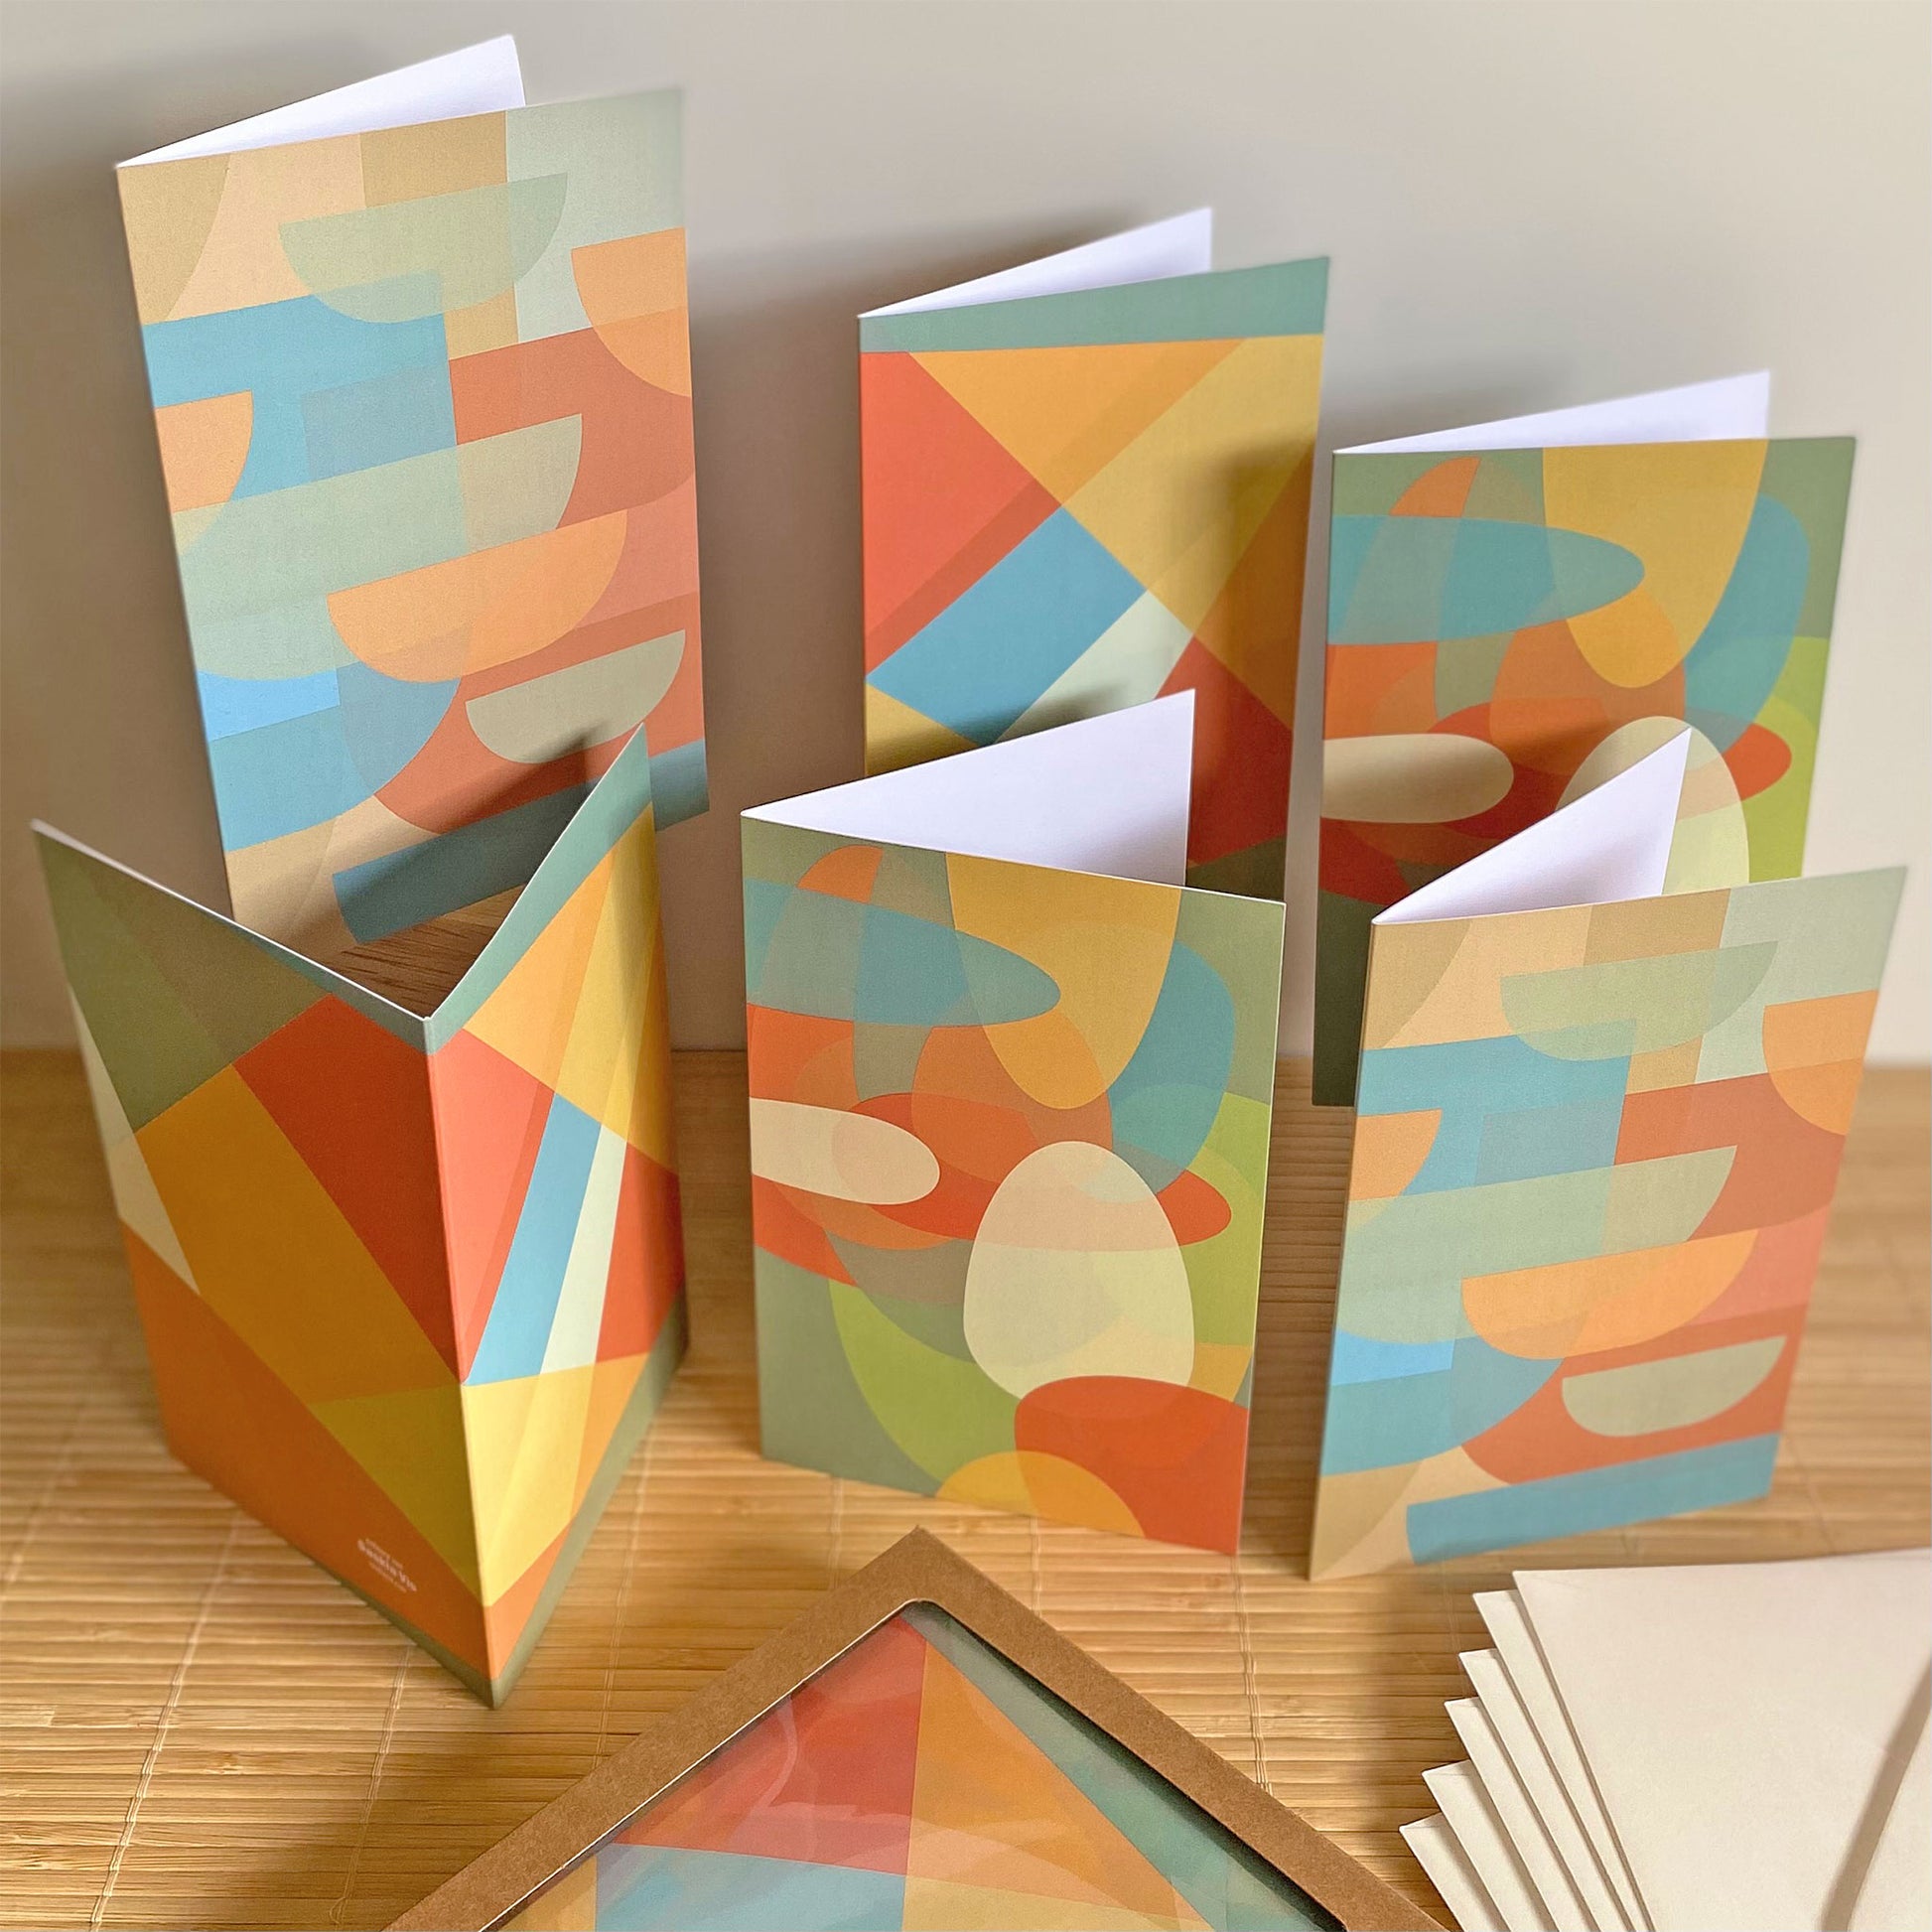 Productafbeelding, foto wenskaarten set 'vorm mozaïek' 6 stuks, een presentatie van alle kaarten met de enveloppen en het verpakkingsdoosje